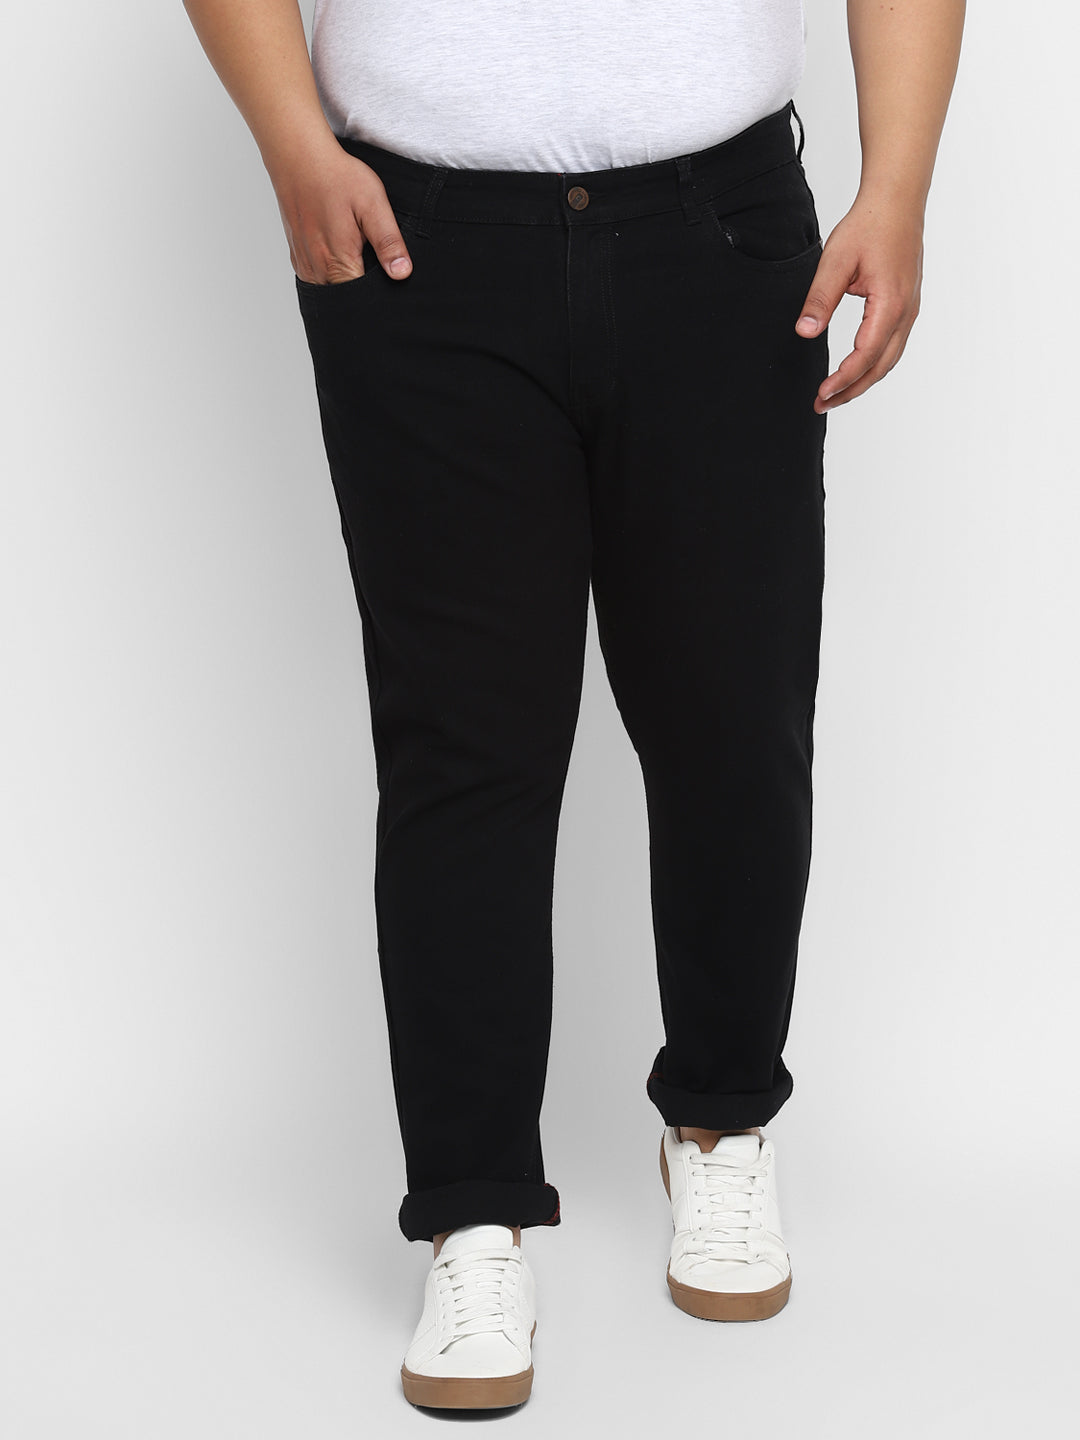 Men's Black Regular Fit Denim Jeans Stretchable